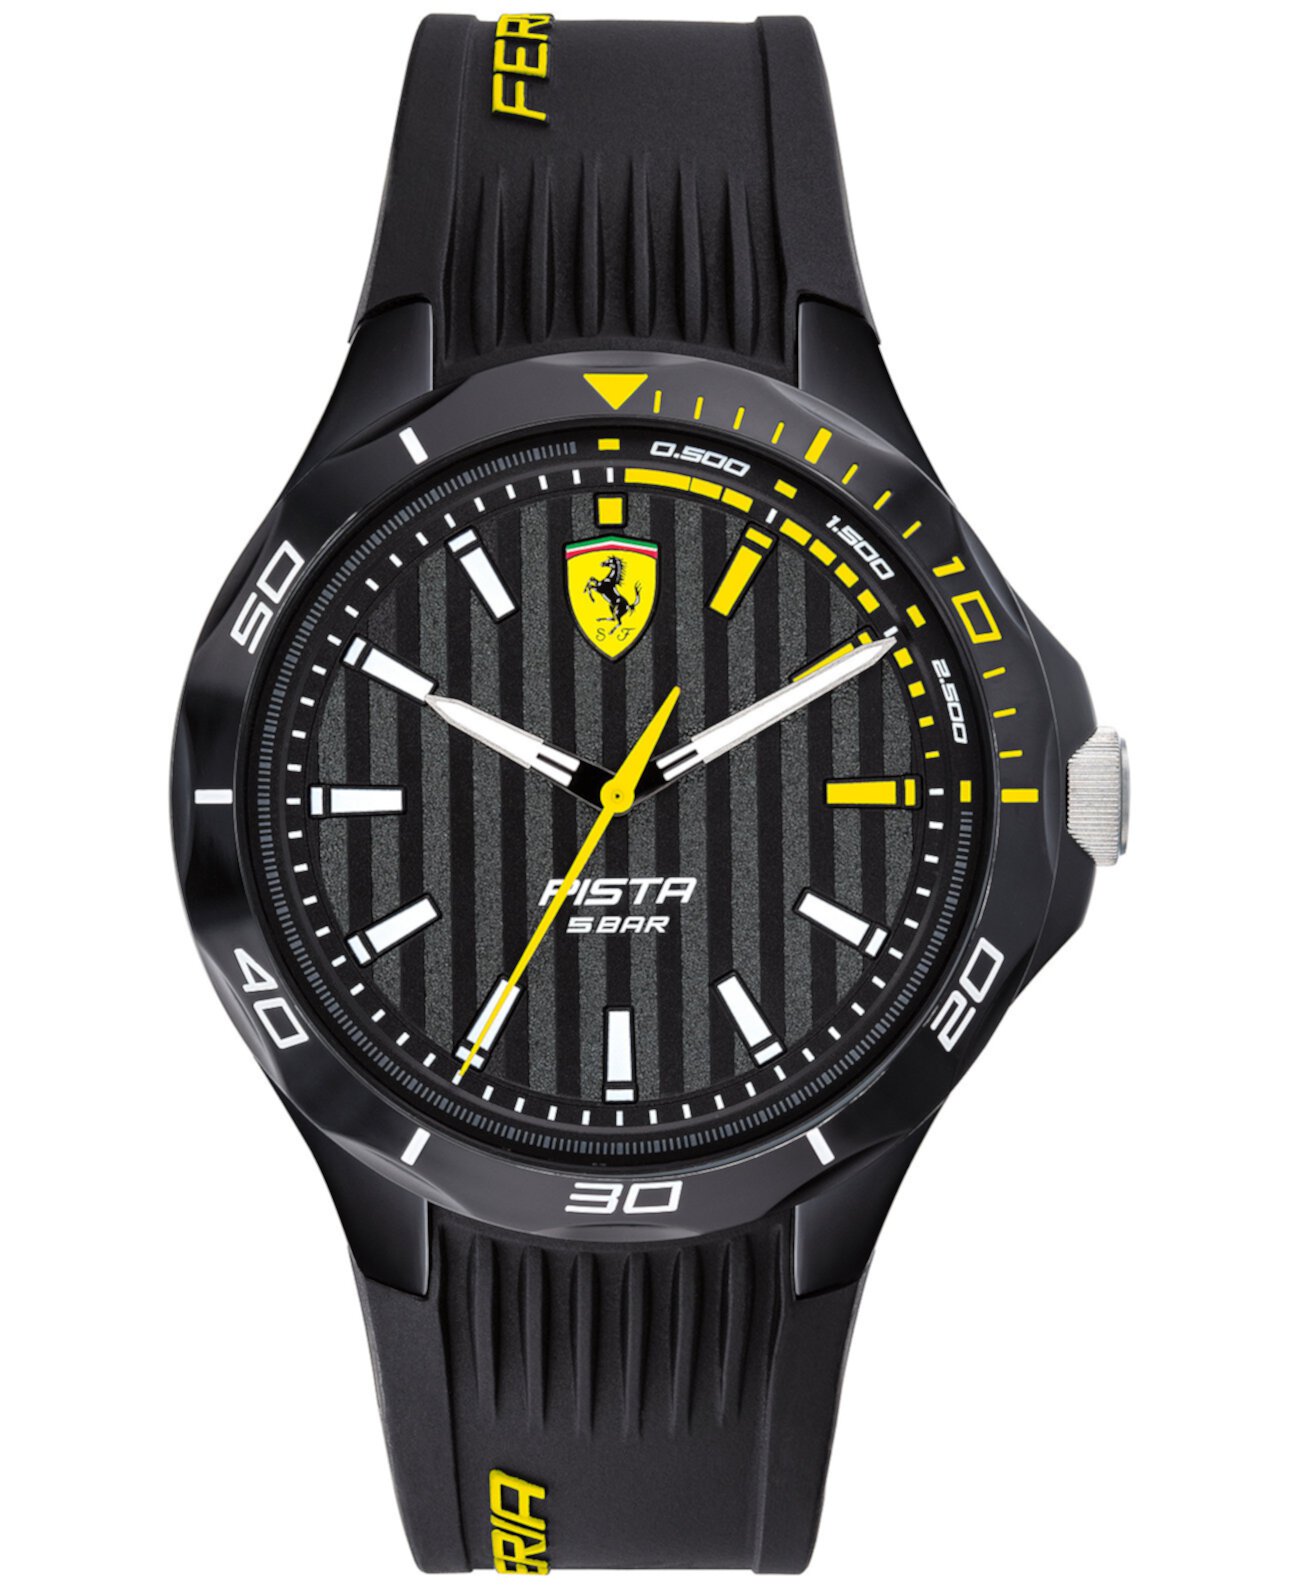 Мужские часы Pista с черным силиконовым ремешком 44 мм Ferrari